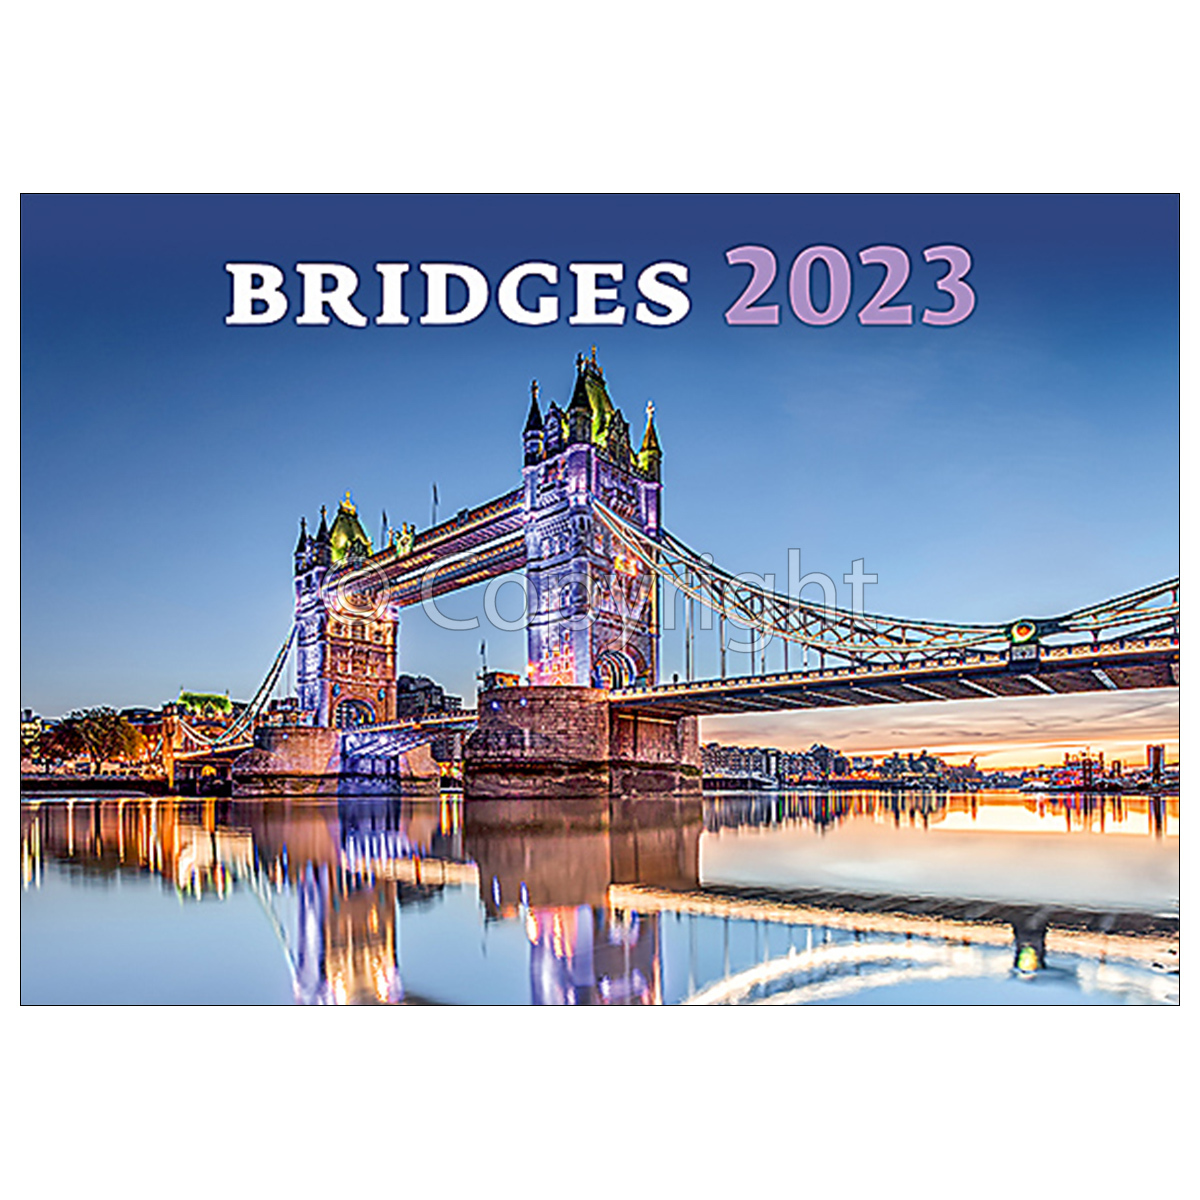 Bridges, képes falinaptár 2023